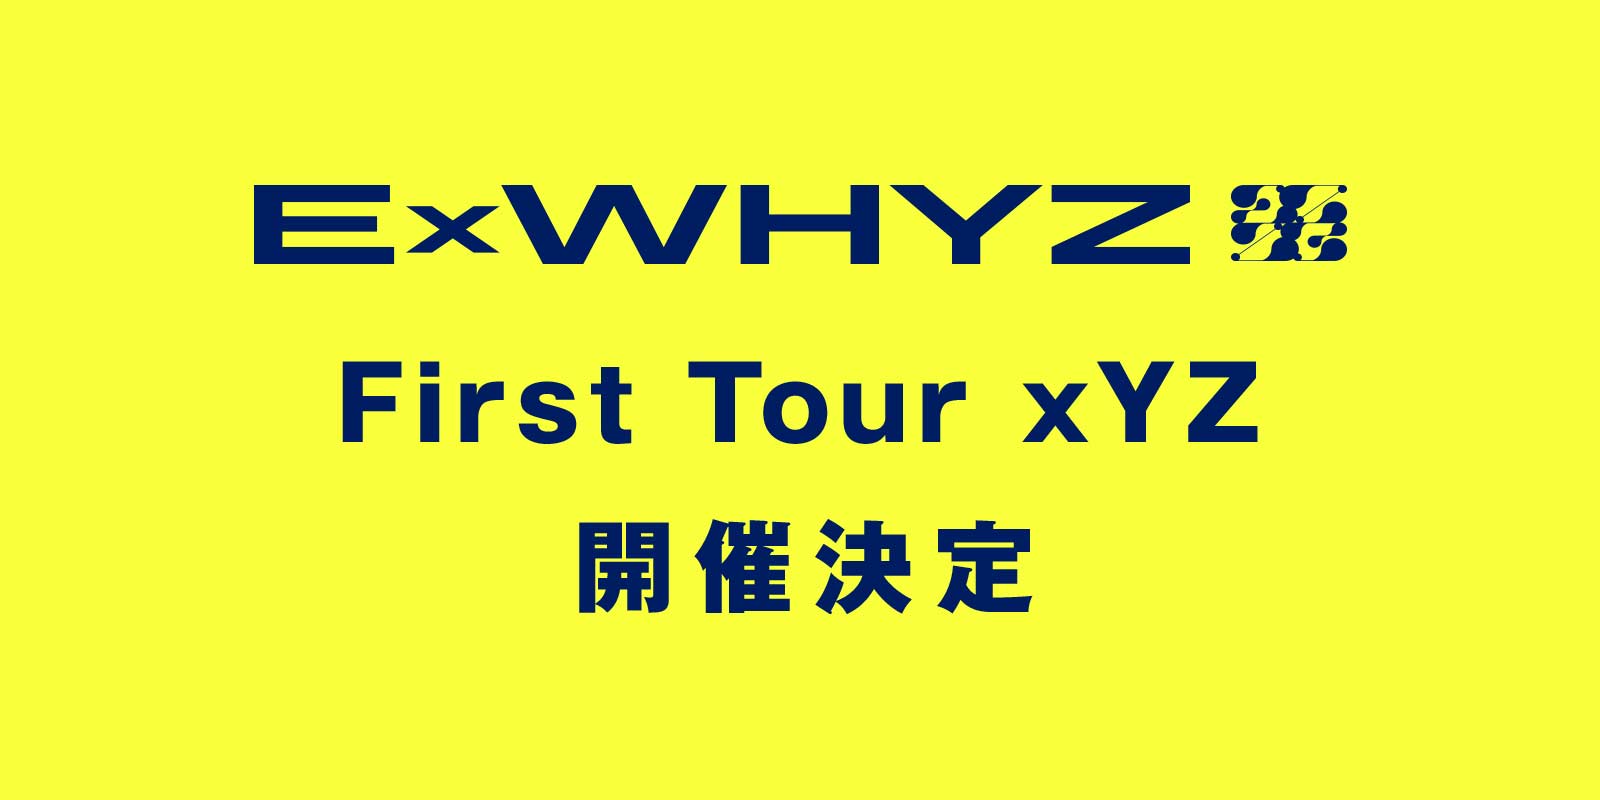 ExWHYZ First Tour xYZ